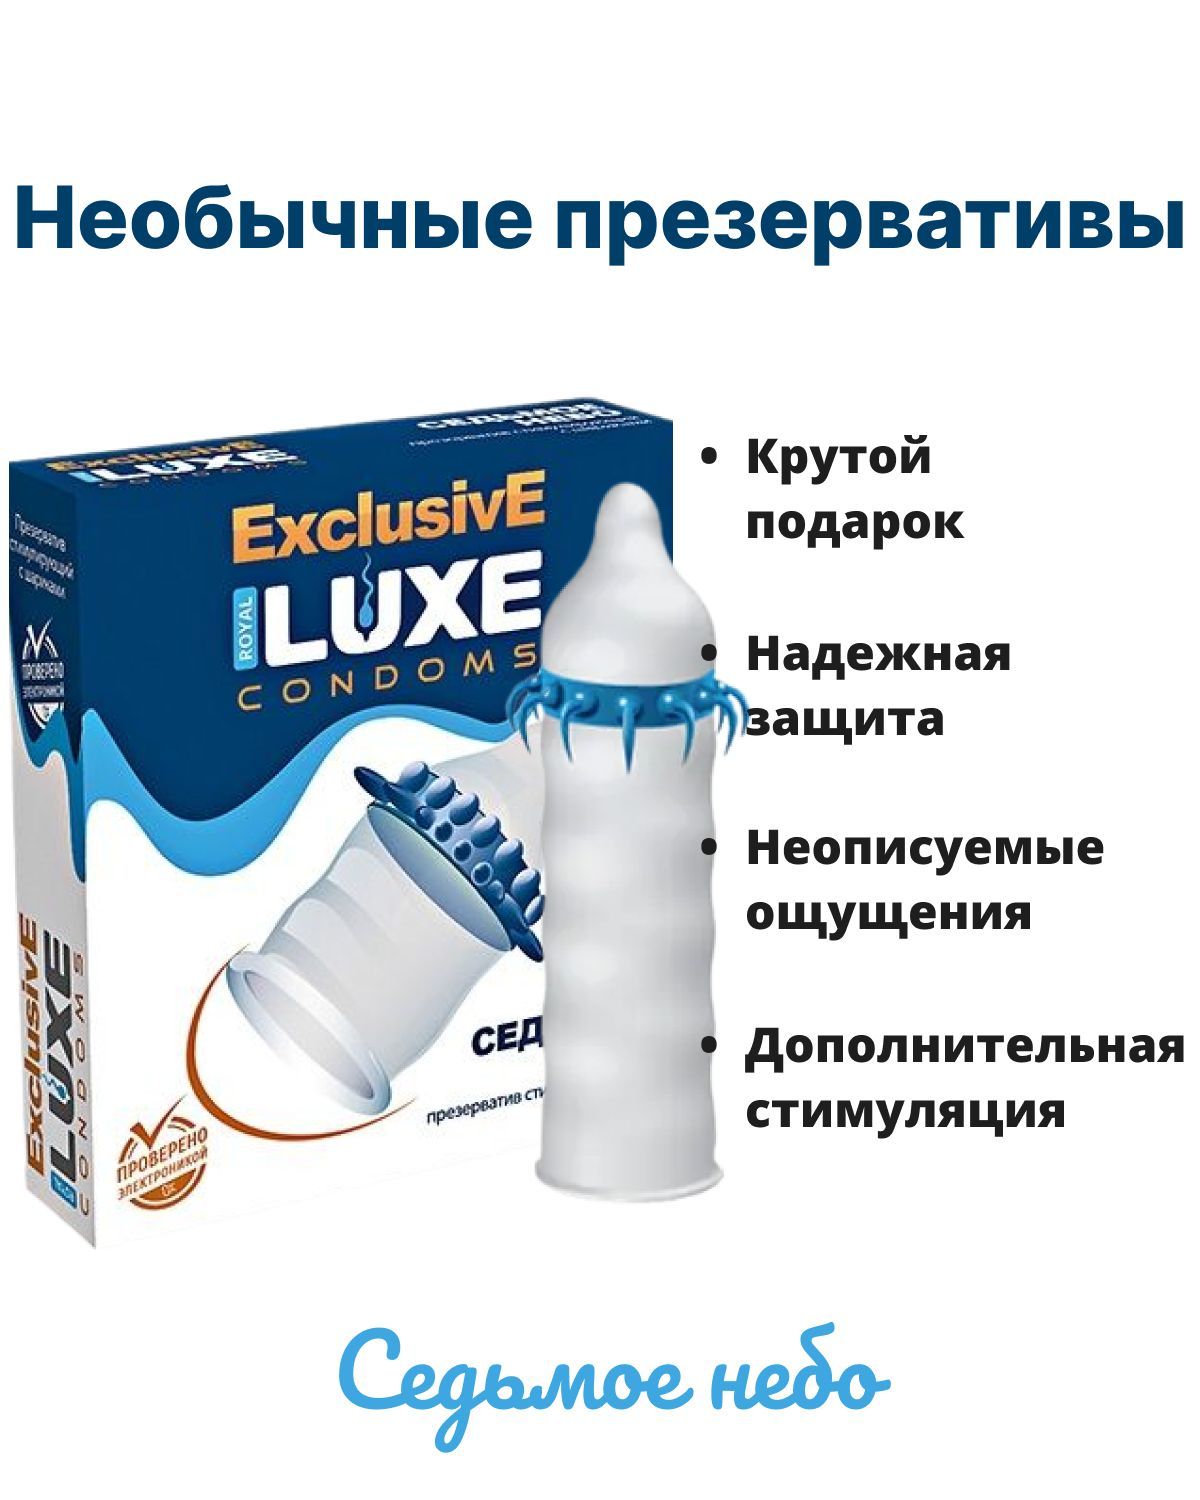 Презервативы купить в Минске. Цена на презервативы с усиками в Беларуси (РБ) LUXE, Sitabella.